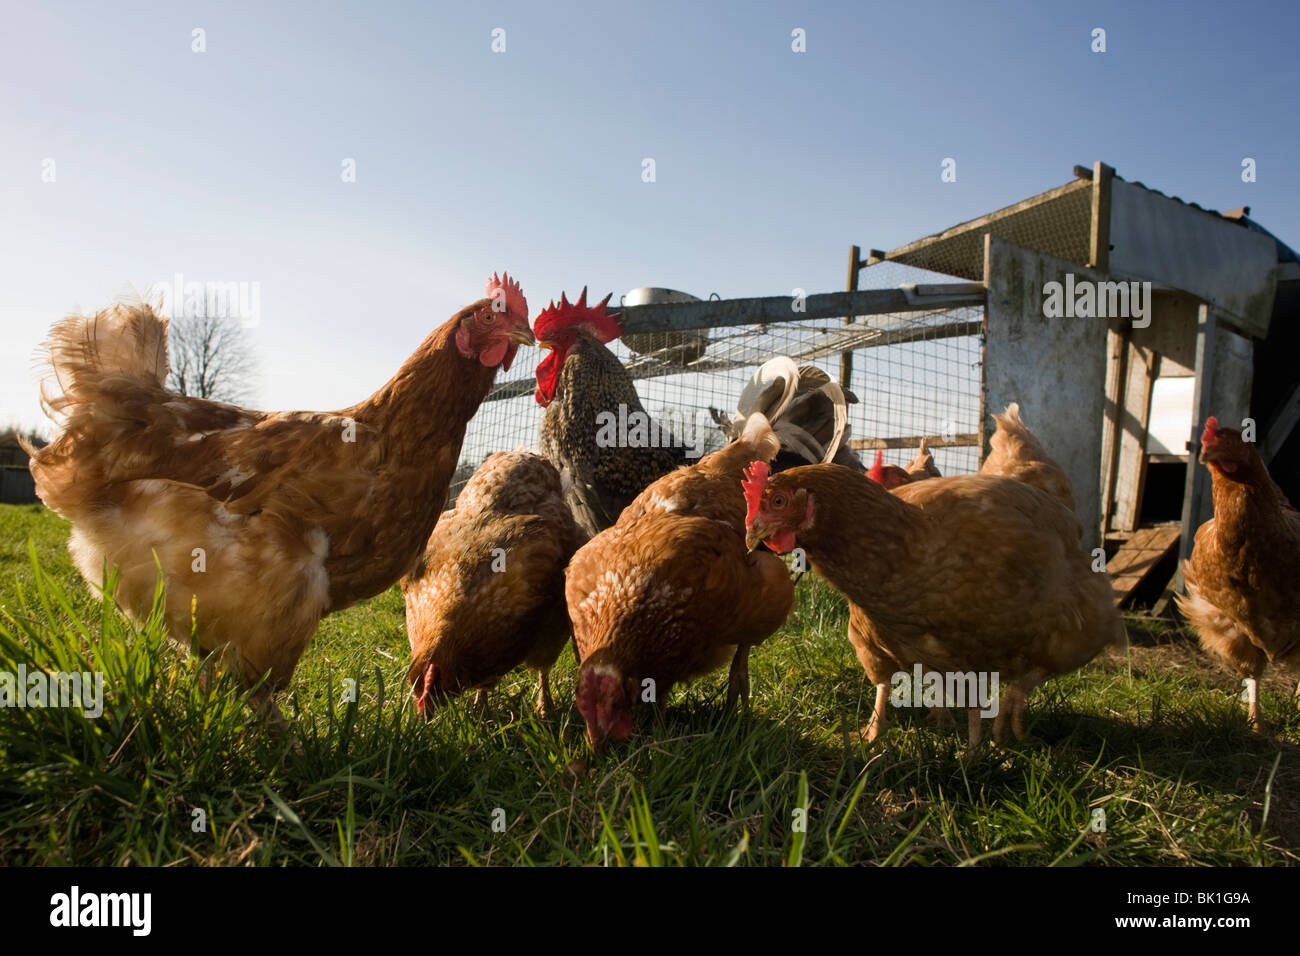 Free Range gallina gallinas merodean en un campo verde perteneciente a una pequeña granja en North Somerset, Inglaterra. Foto de stock